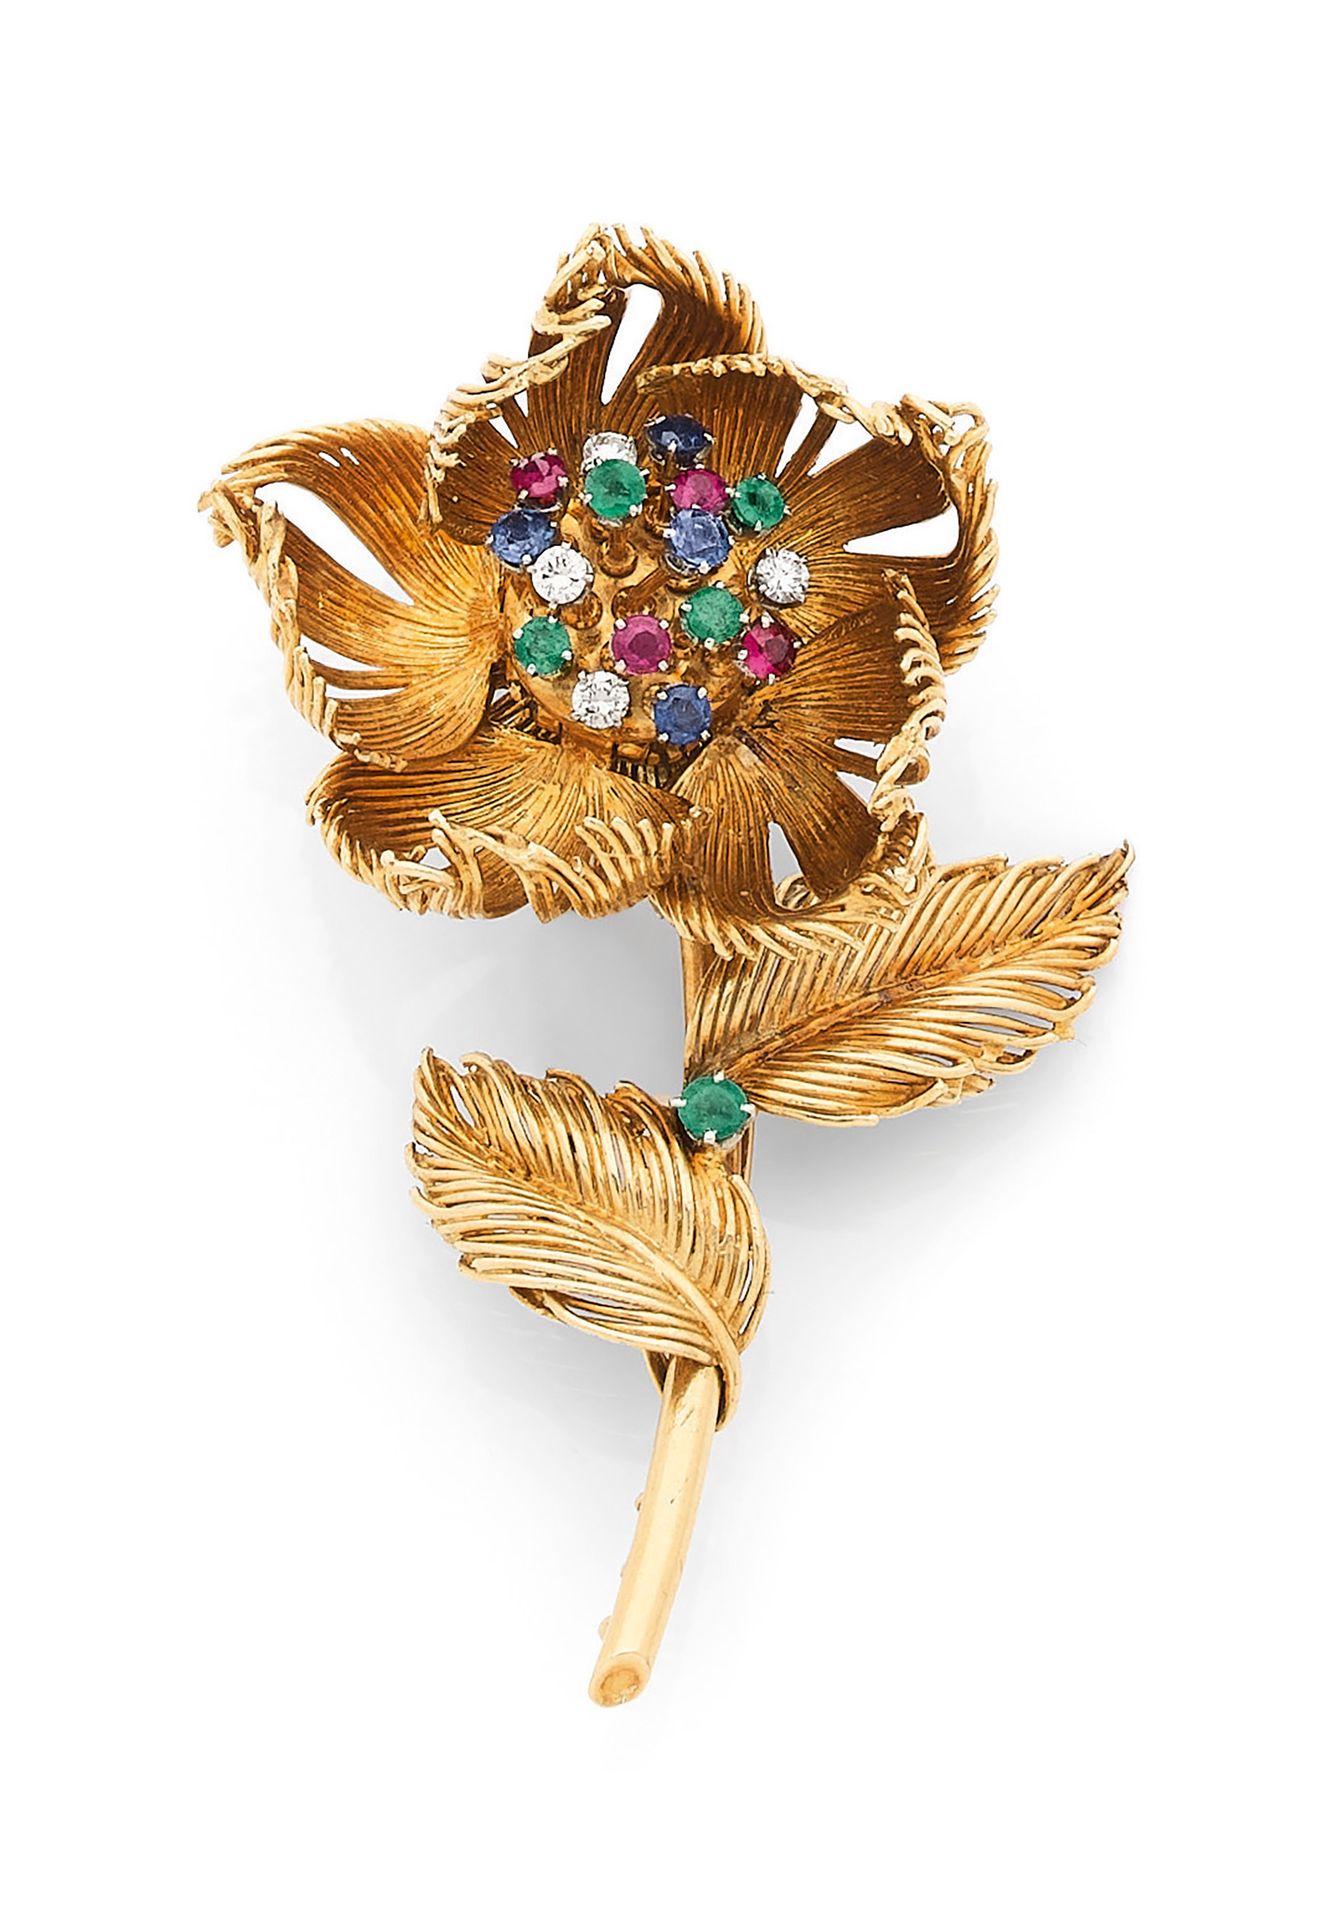 CARTIER 卡地亚
一枚18K(750)金胸针夹，代表一朵花，活动的花蕊上镶嵌着钻石、红宝石、蓝宝石和绿宝石，花瓣是衔接的。 
有签名和编号。 
1950年&hellip;